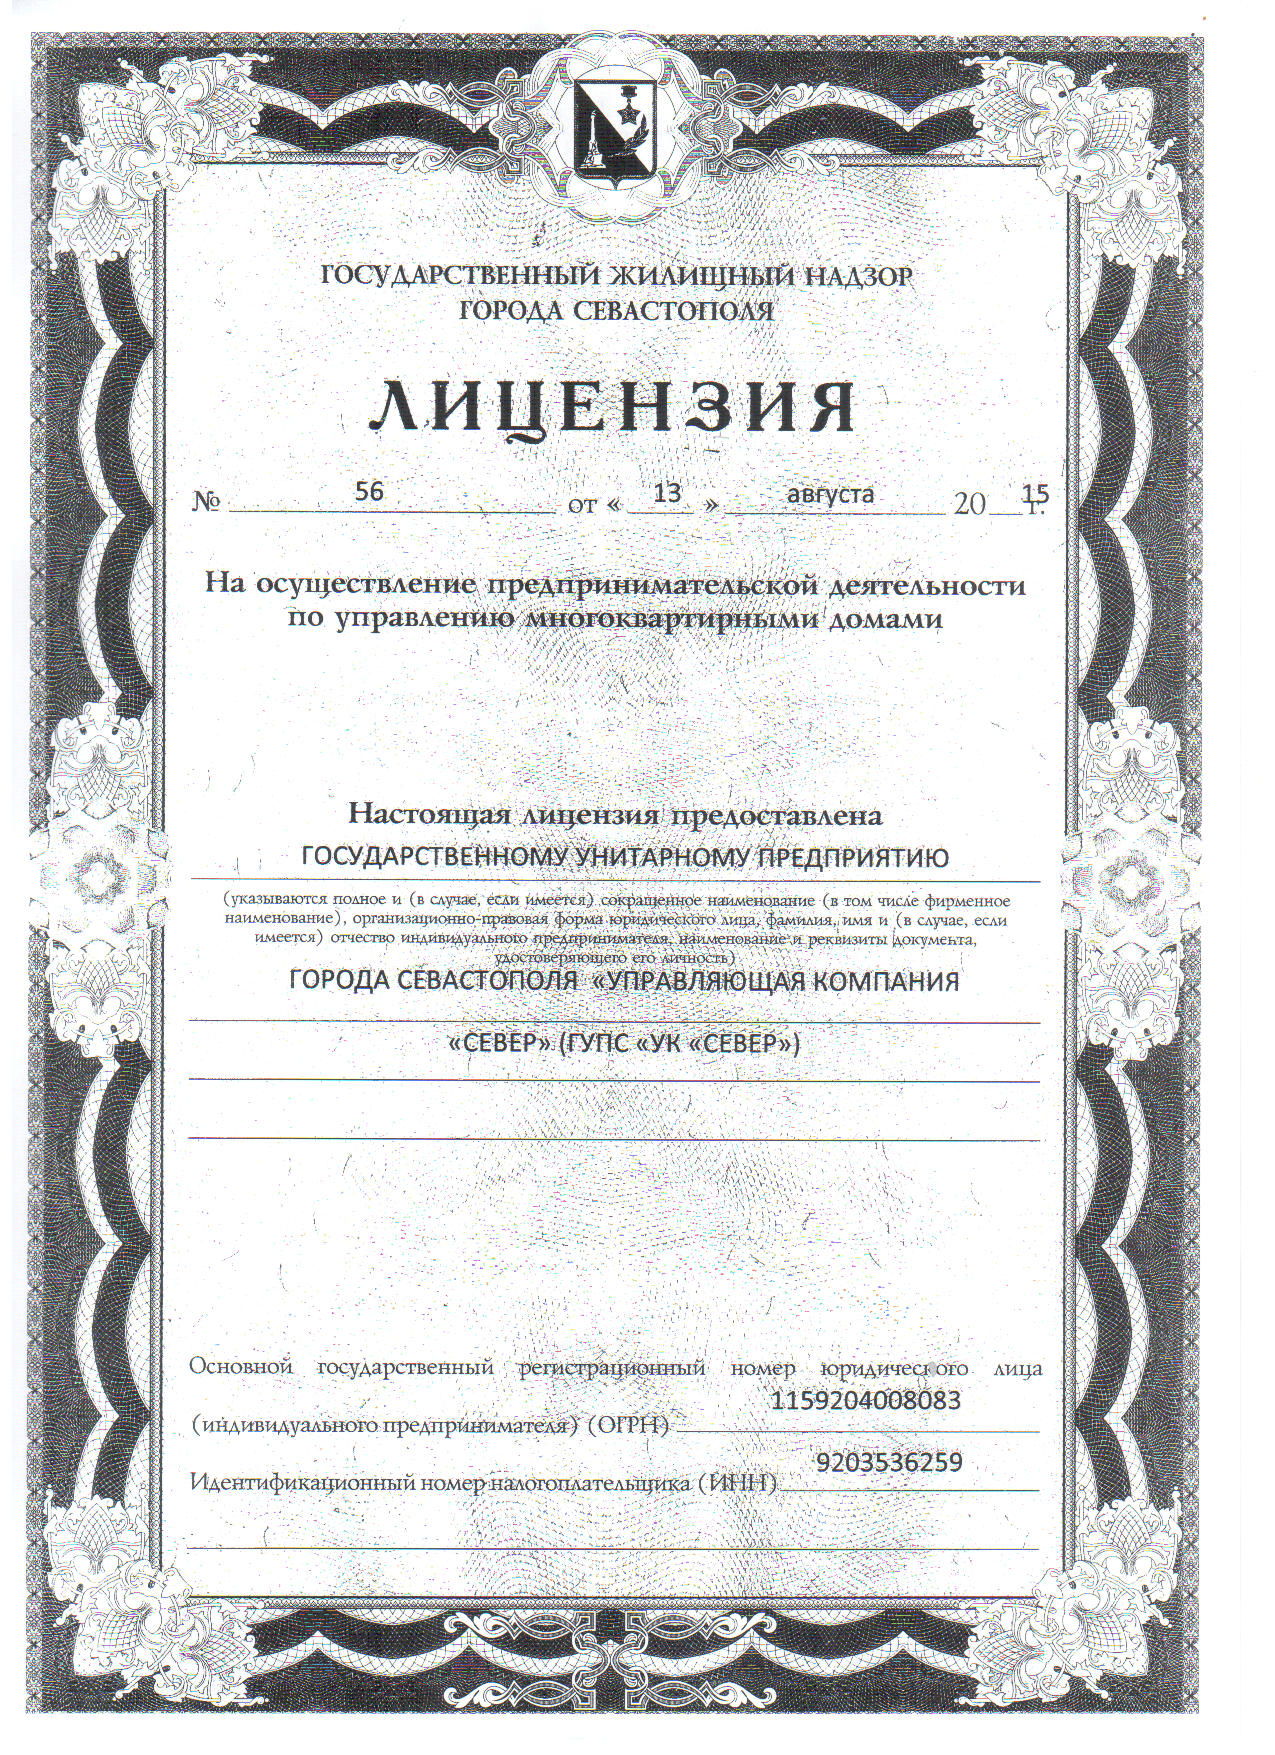 Лицензия №56 от 13.08.2015 г. с приложением №1